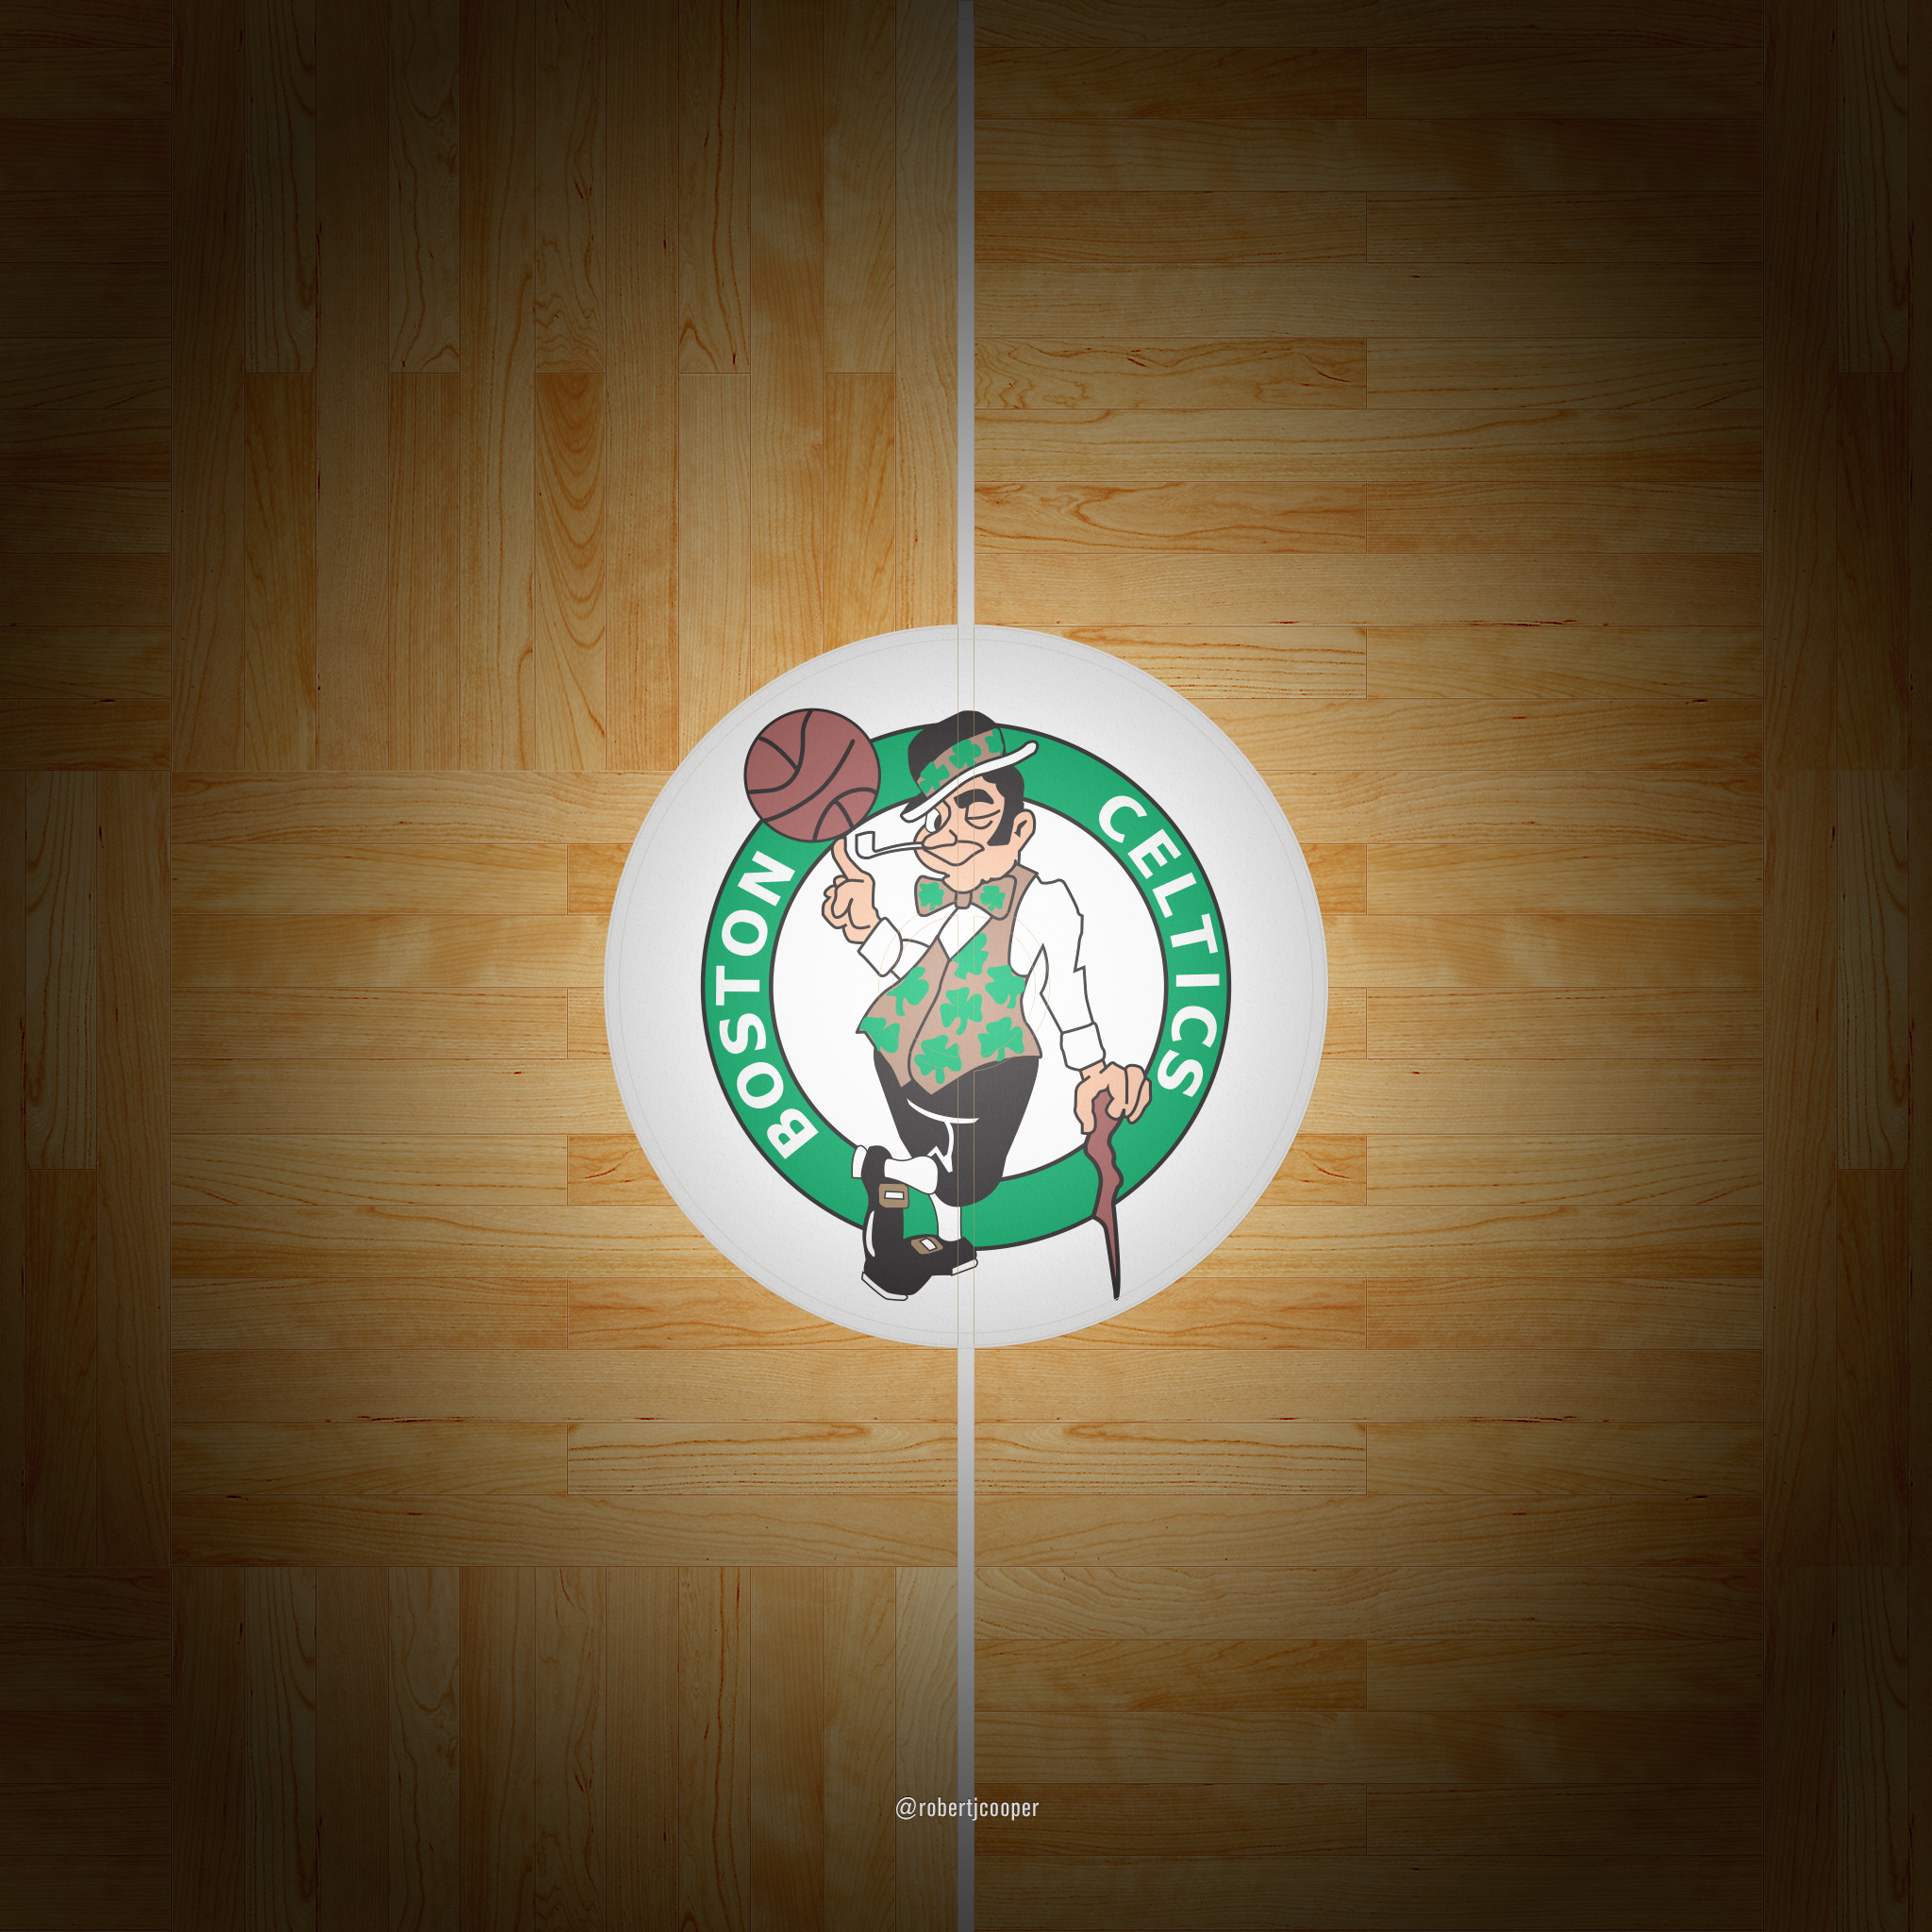 2048x2048 Celtics court iphone; Celtics court ipad. Boston Celtics parquet court  wallpapers ...